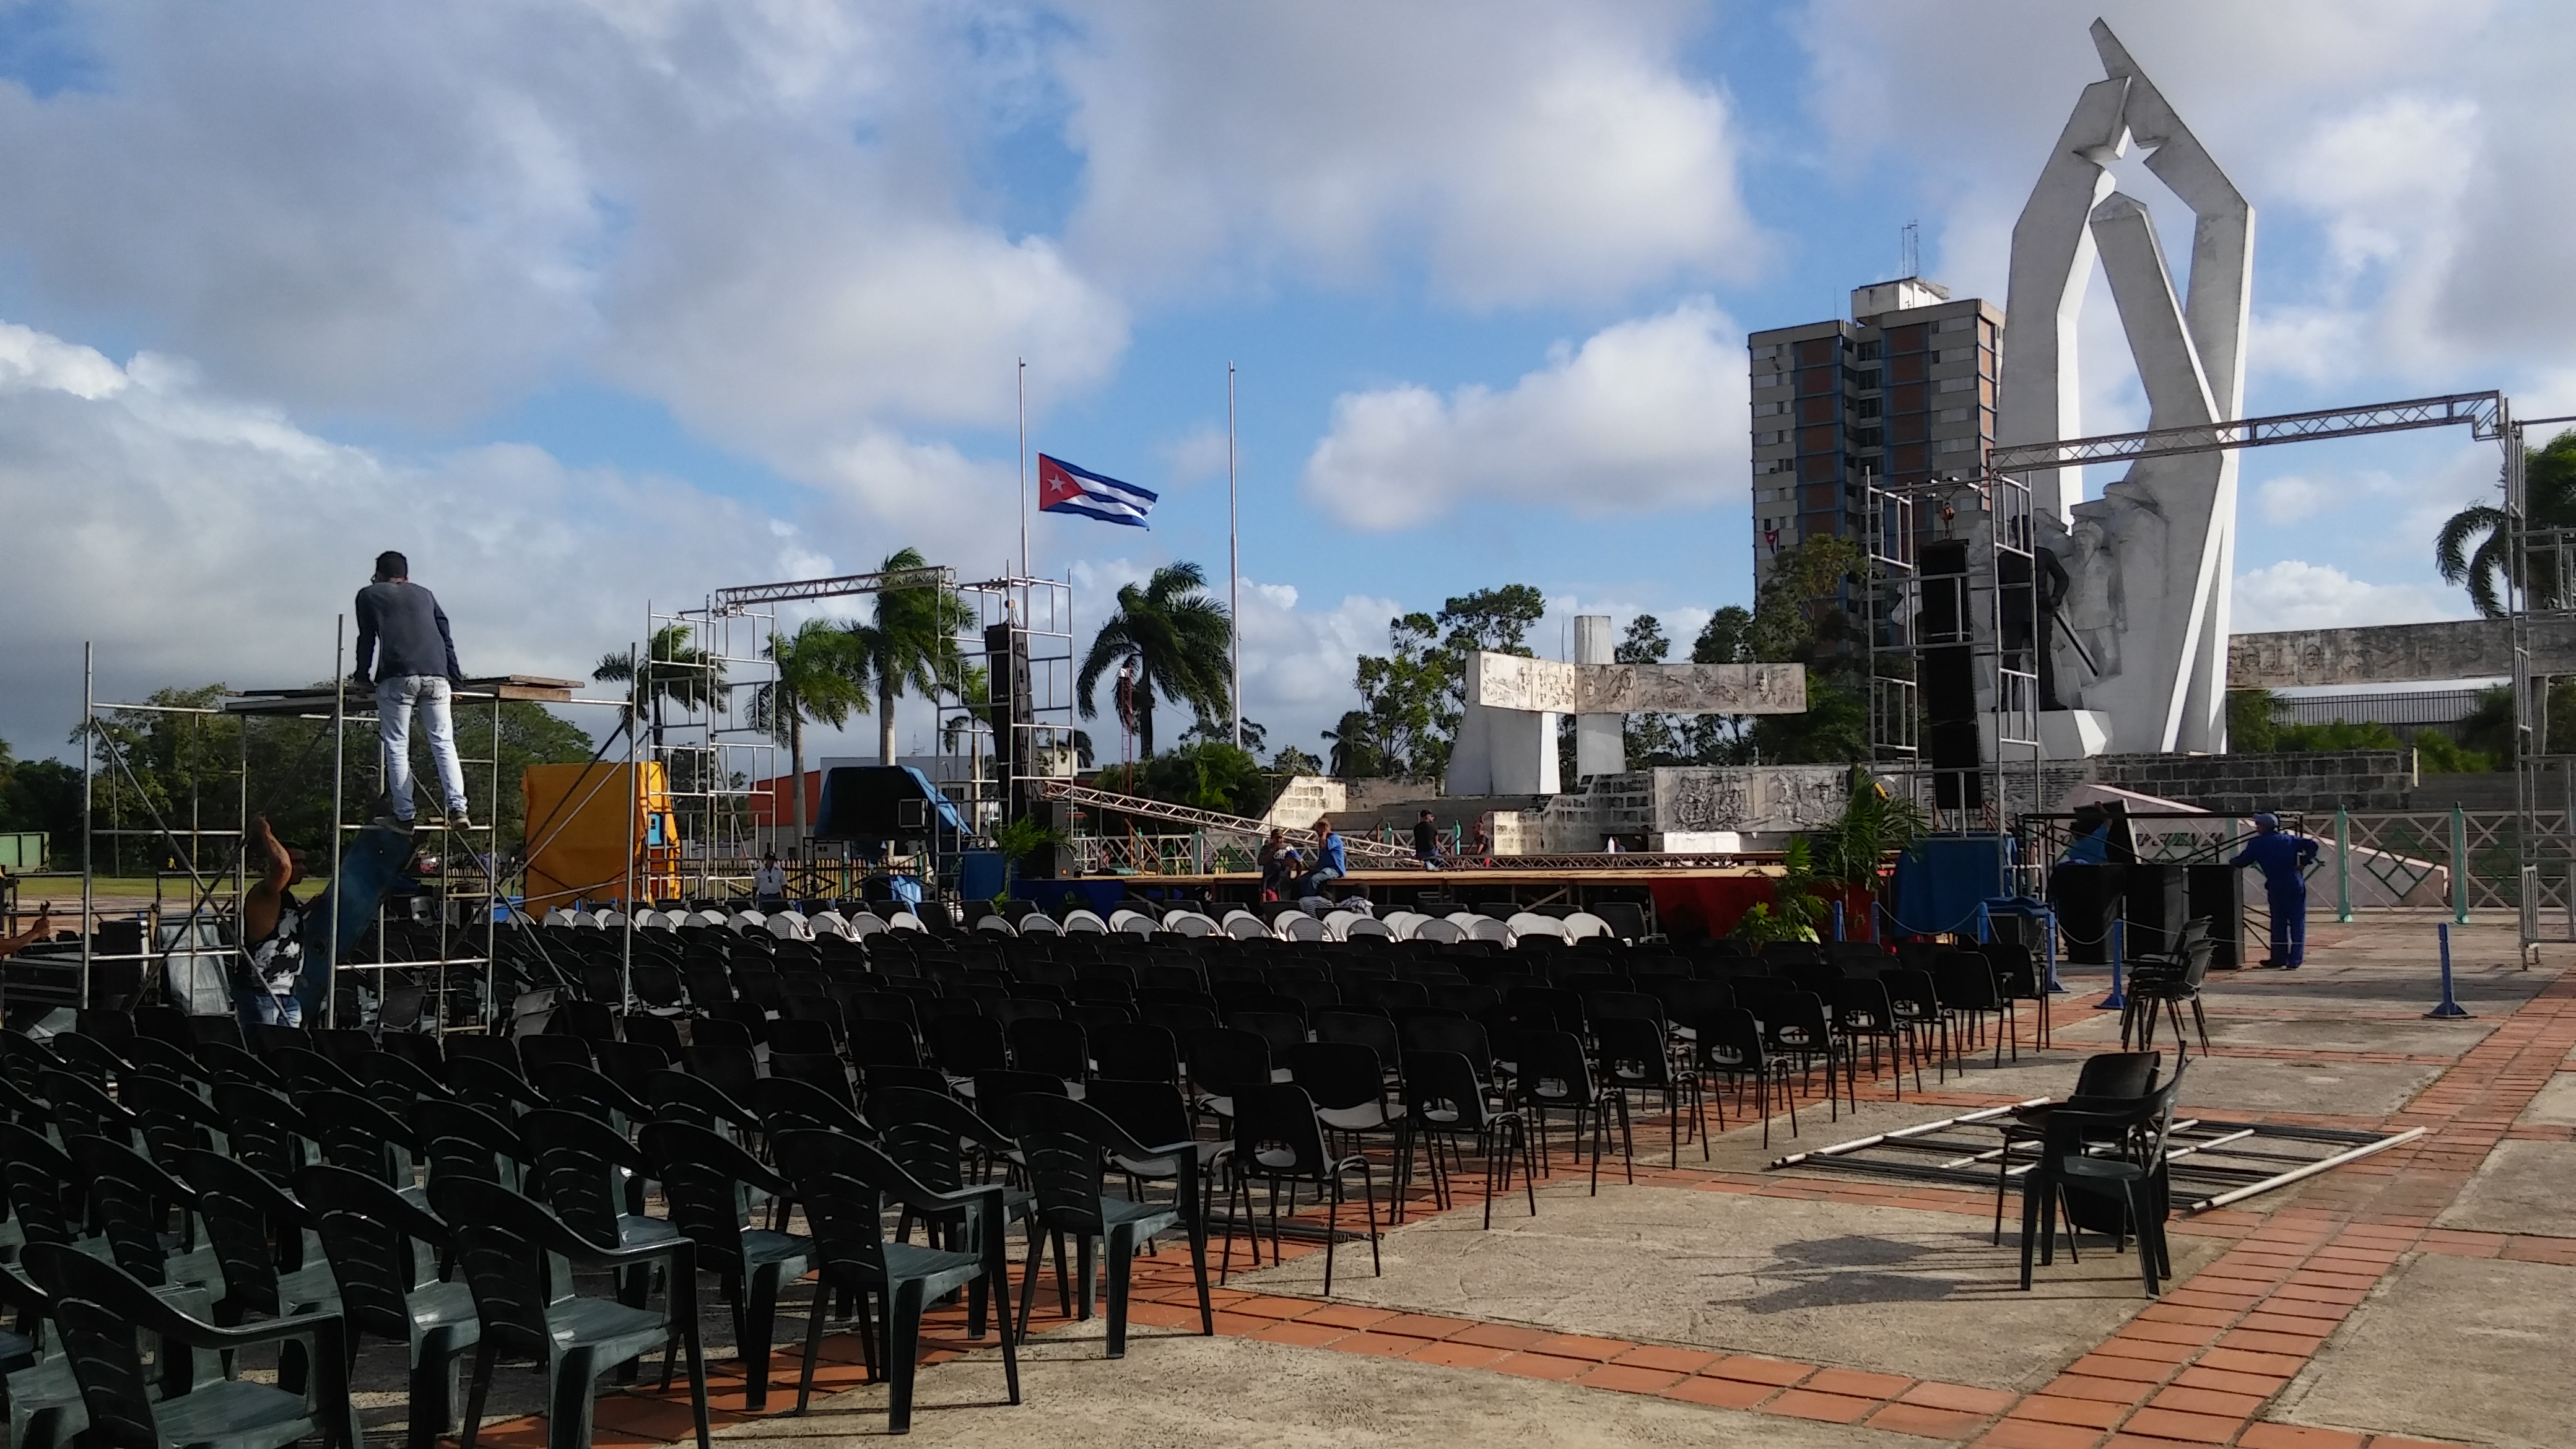 La Plaza de la Revolución camagüeyana se prepara para la velada en honor a Fidel, en la noche de este jueves. Foto: Orlando Seguí Aguilar